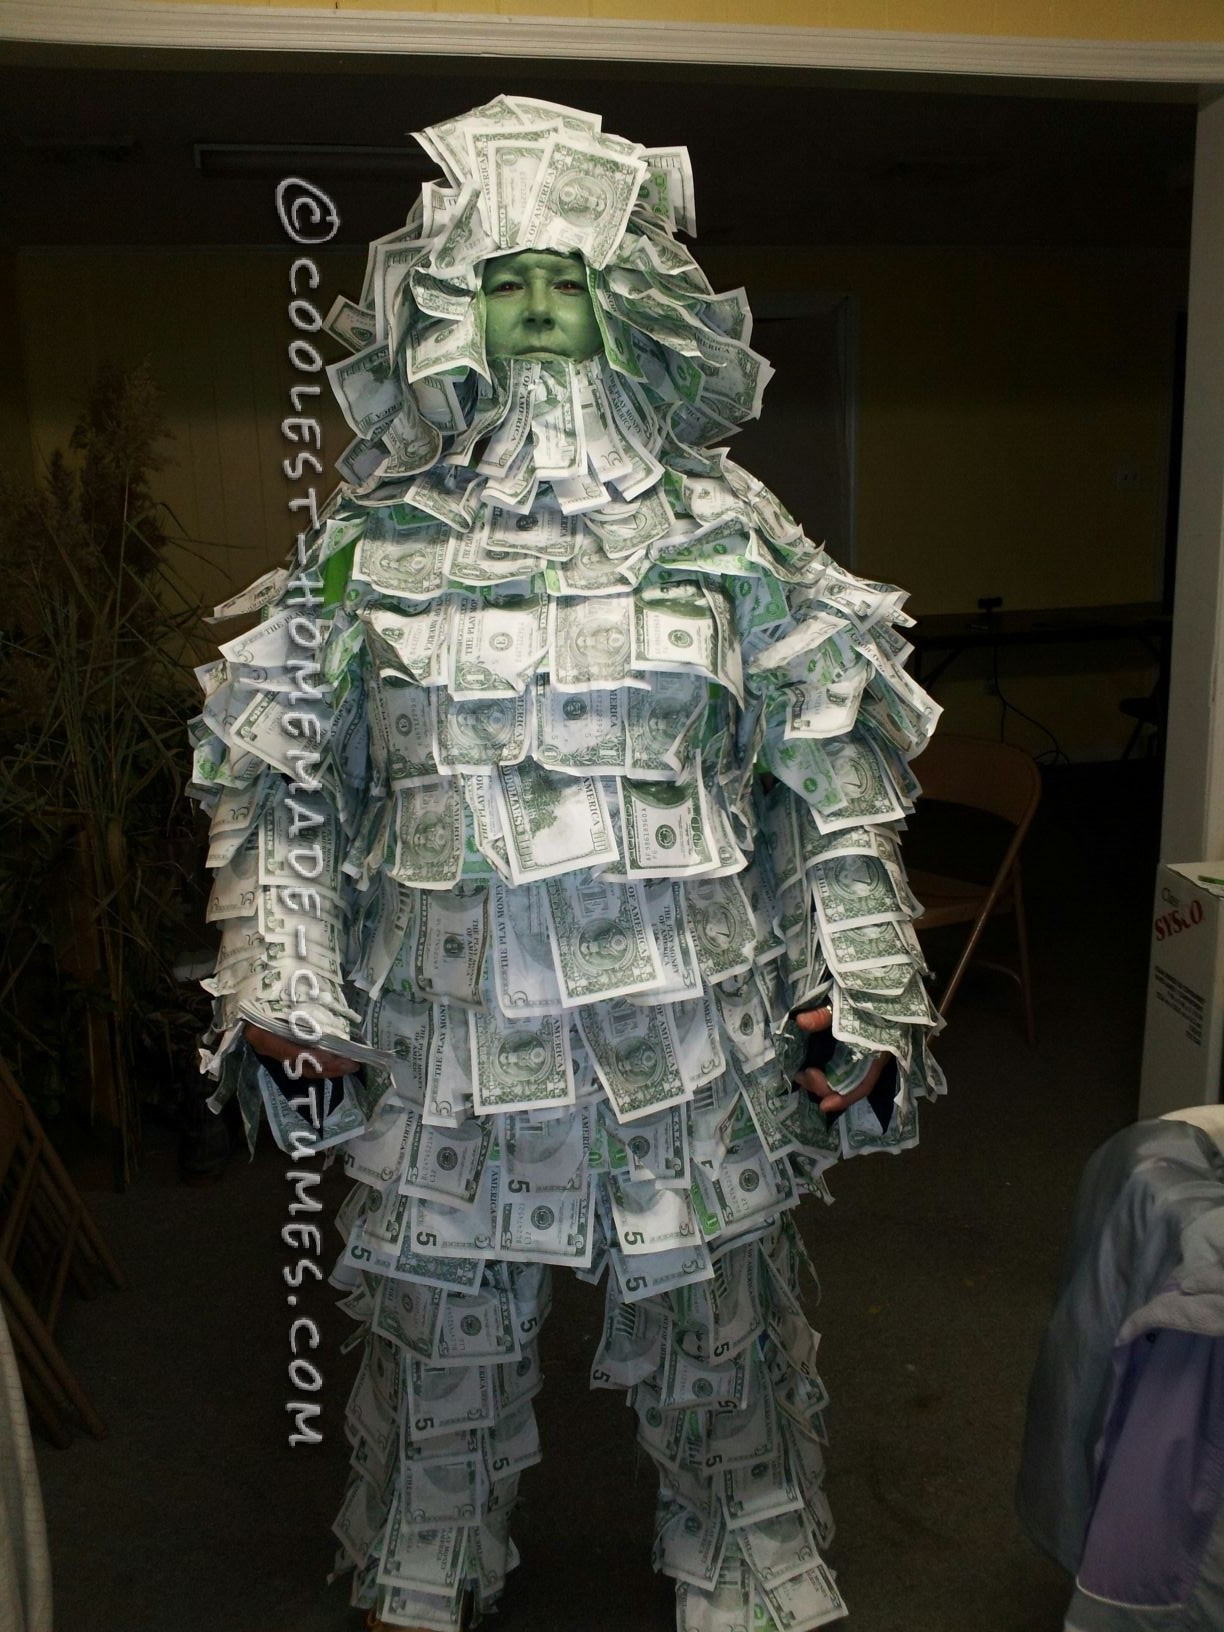 awesome-geico-money-man-costume-25483-e1352407887755.jpg